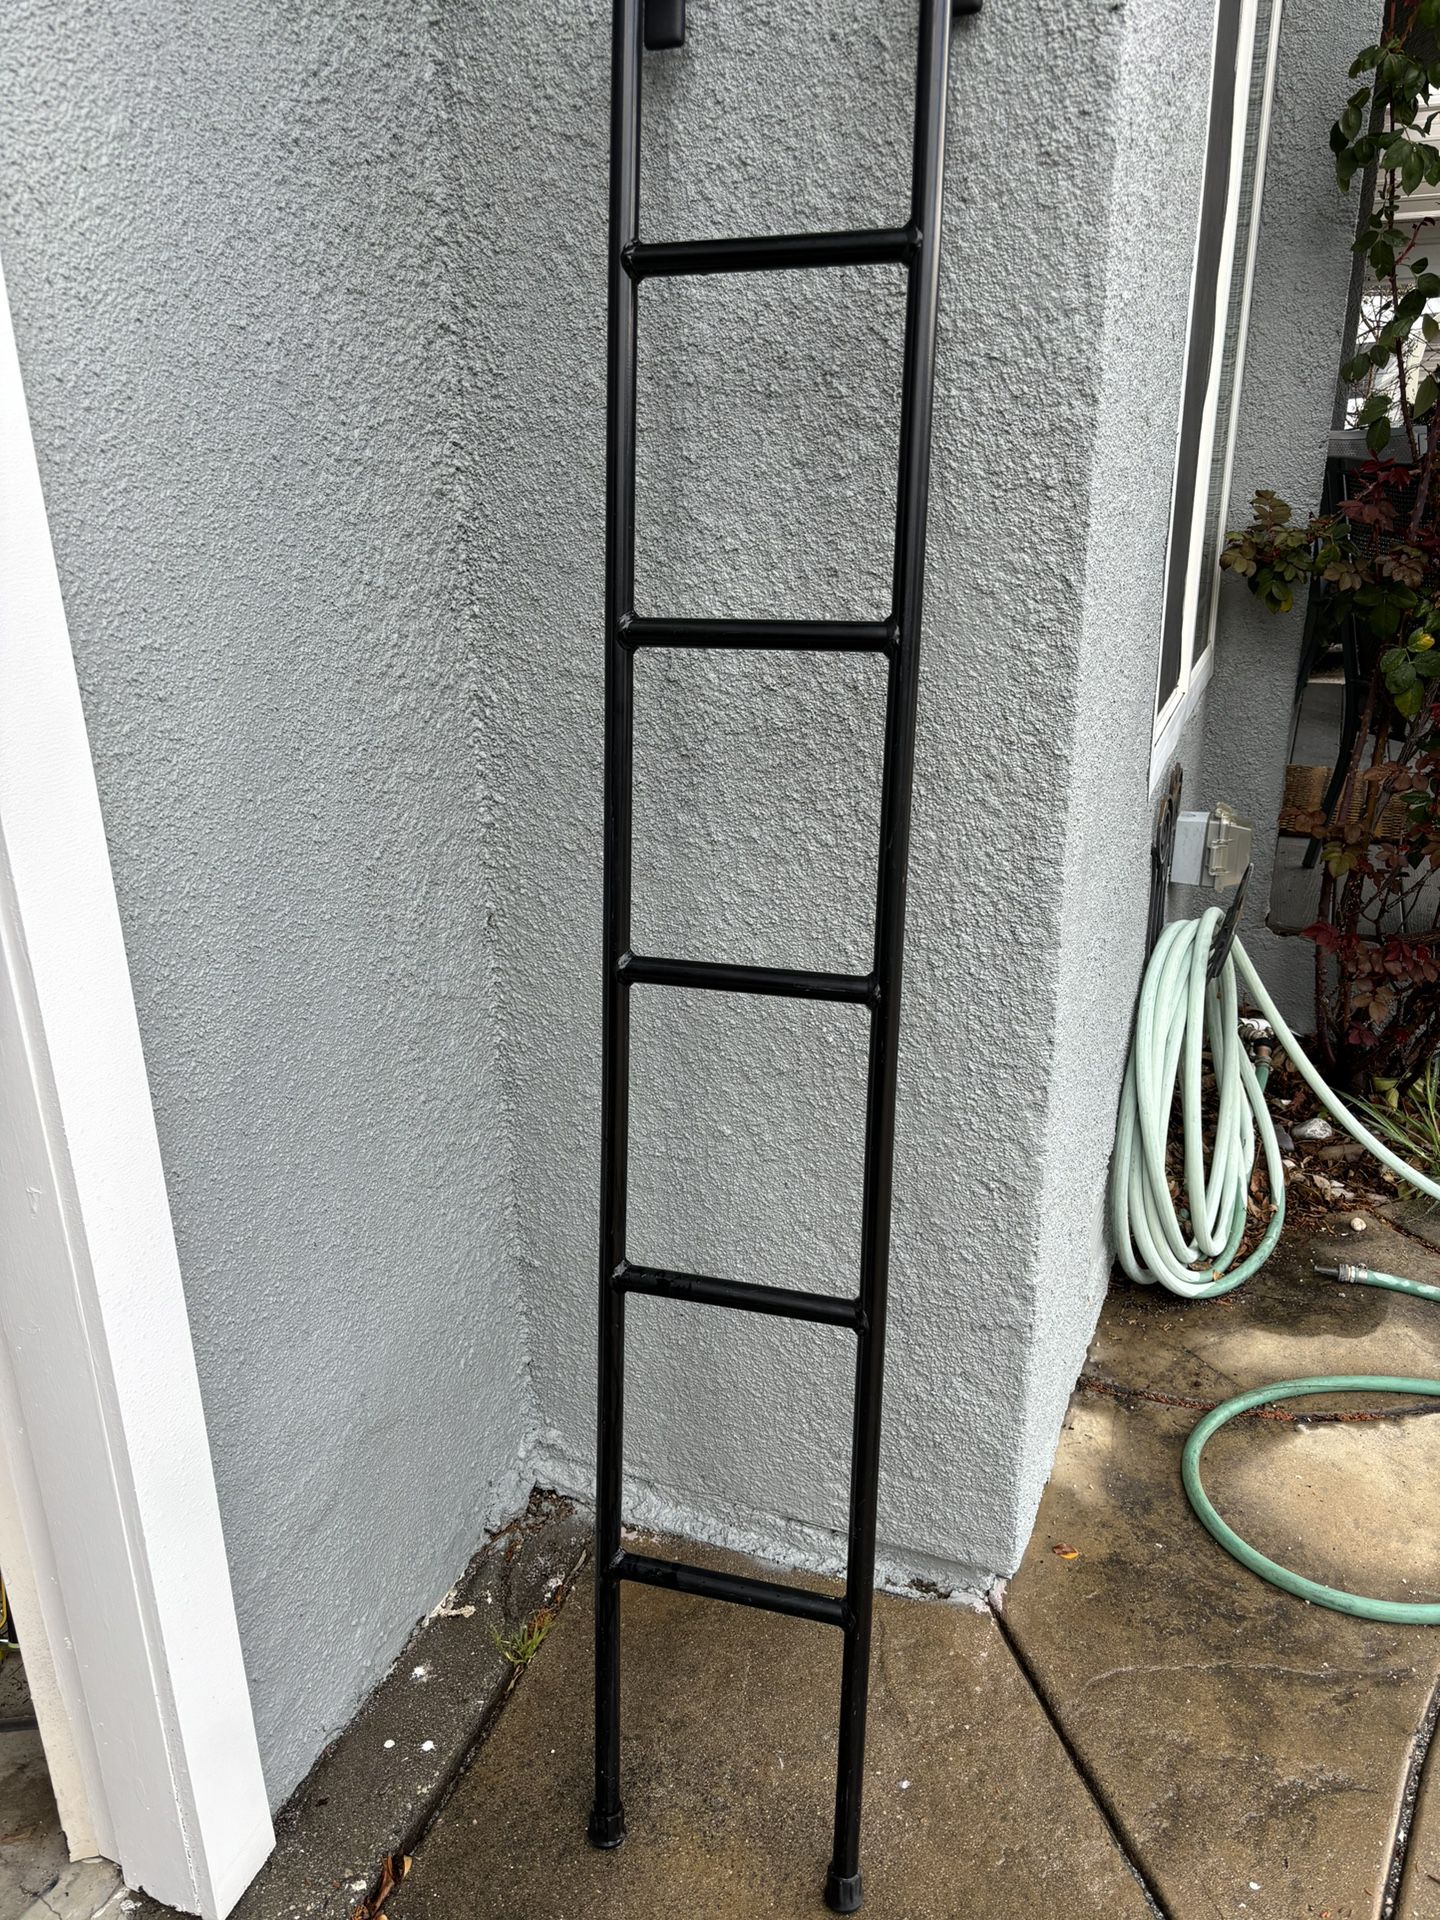 Trailer Bunk Ladder